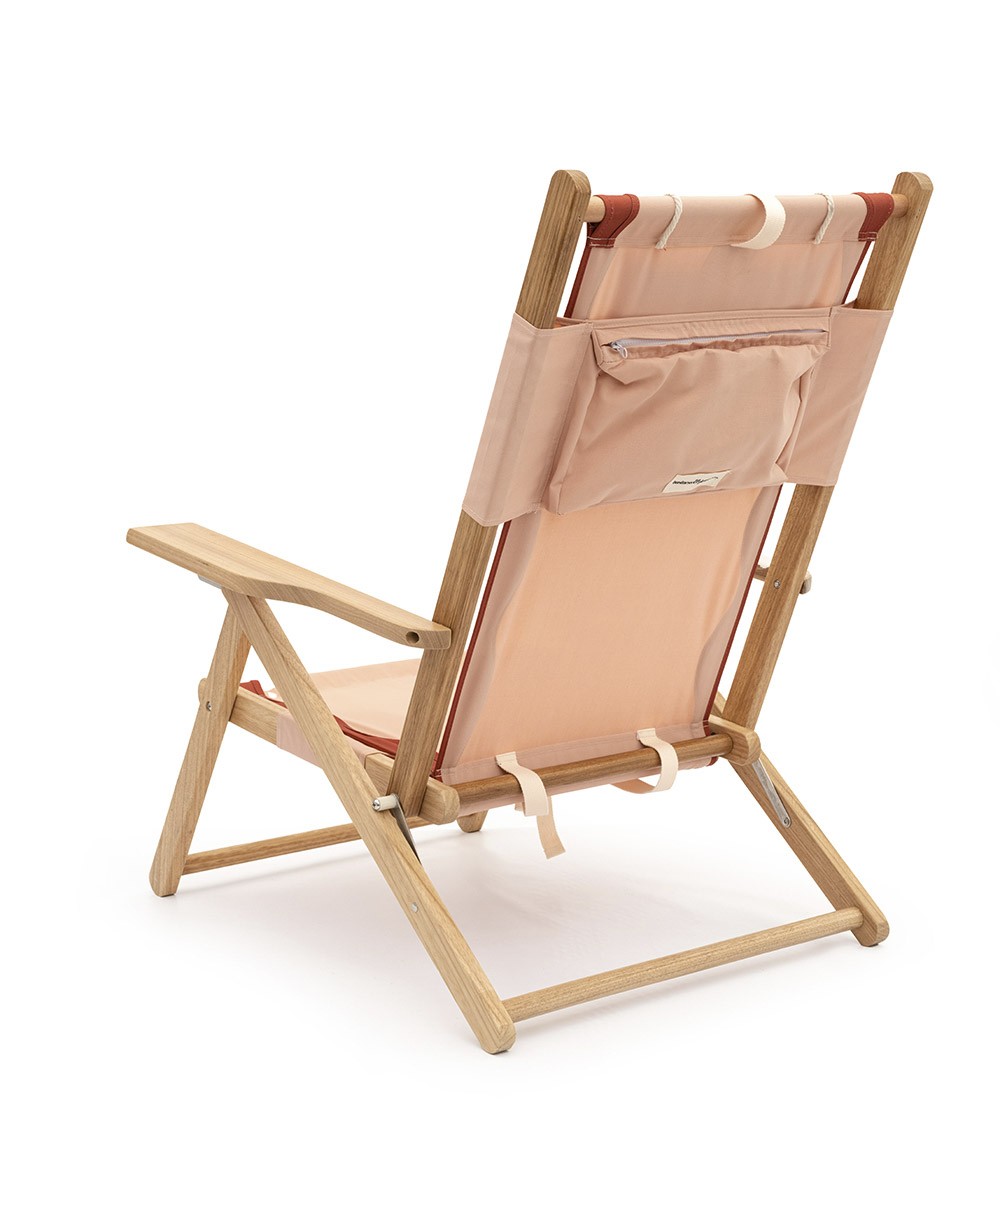 Hier abgebildet ist der The Tommy Chair in Rivie Pink von Business & Pleasure Co. – im RAUM concept store